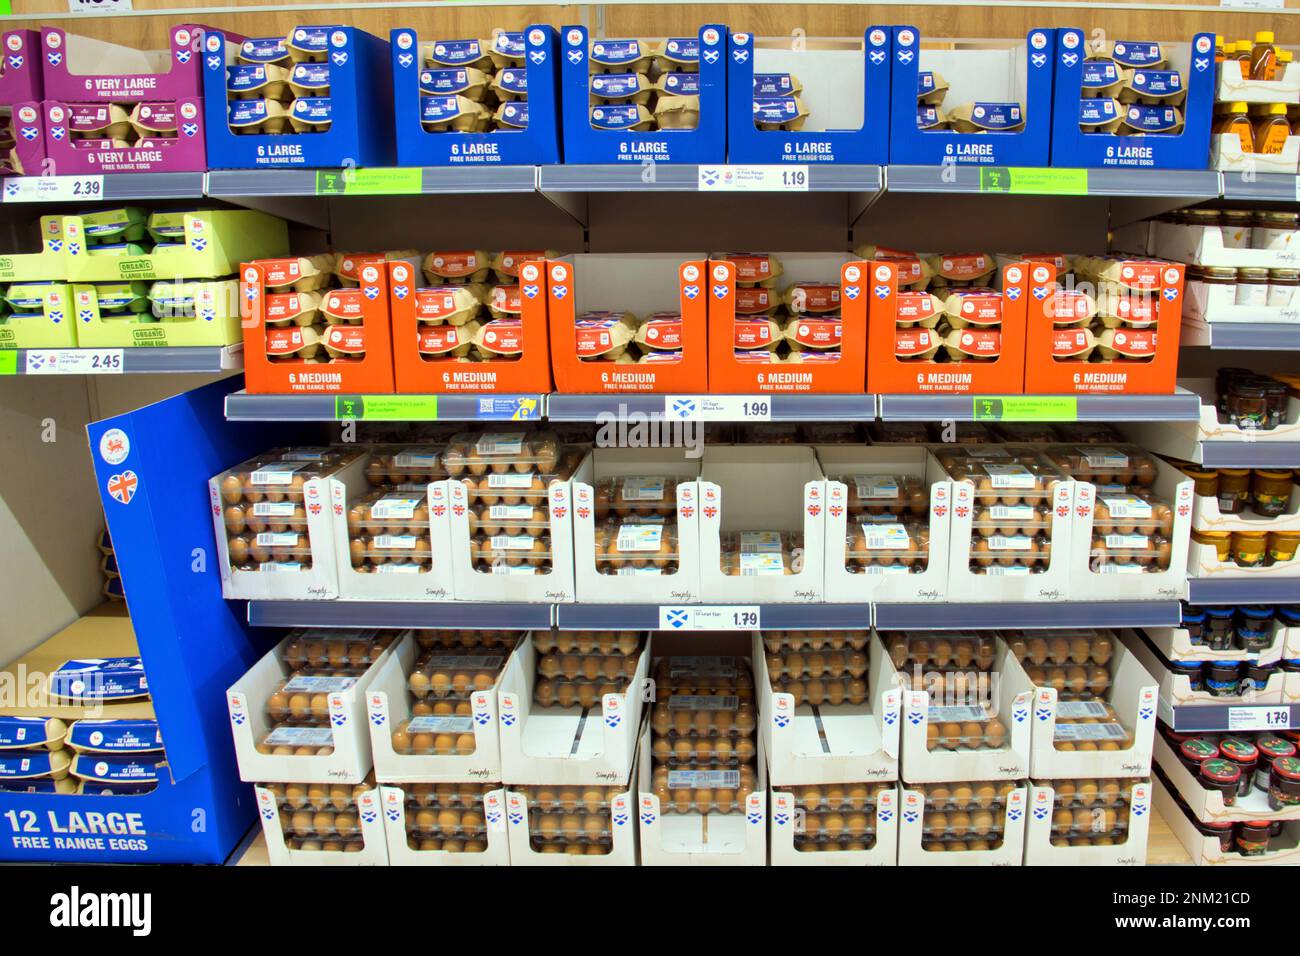 Glasgow, Schottland, Vereinigtes Königreich 24. Februar 2023. Eier Lidl-Eier und Tomaten-Limits stellen die Versorgung sicher, da ihre Läden aufgrund der Einschränkungen voll sind. Credit Gerard Ferry/Alamy Live News Stockfoto